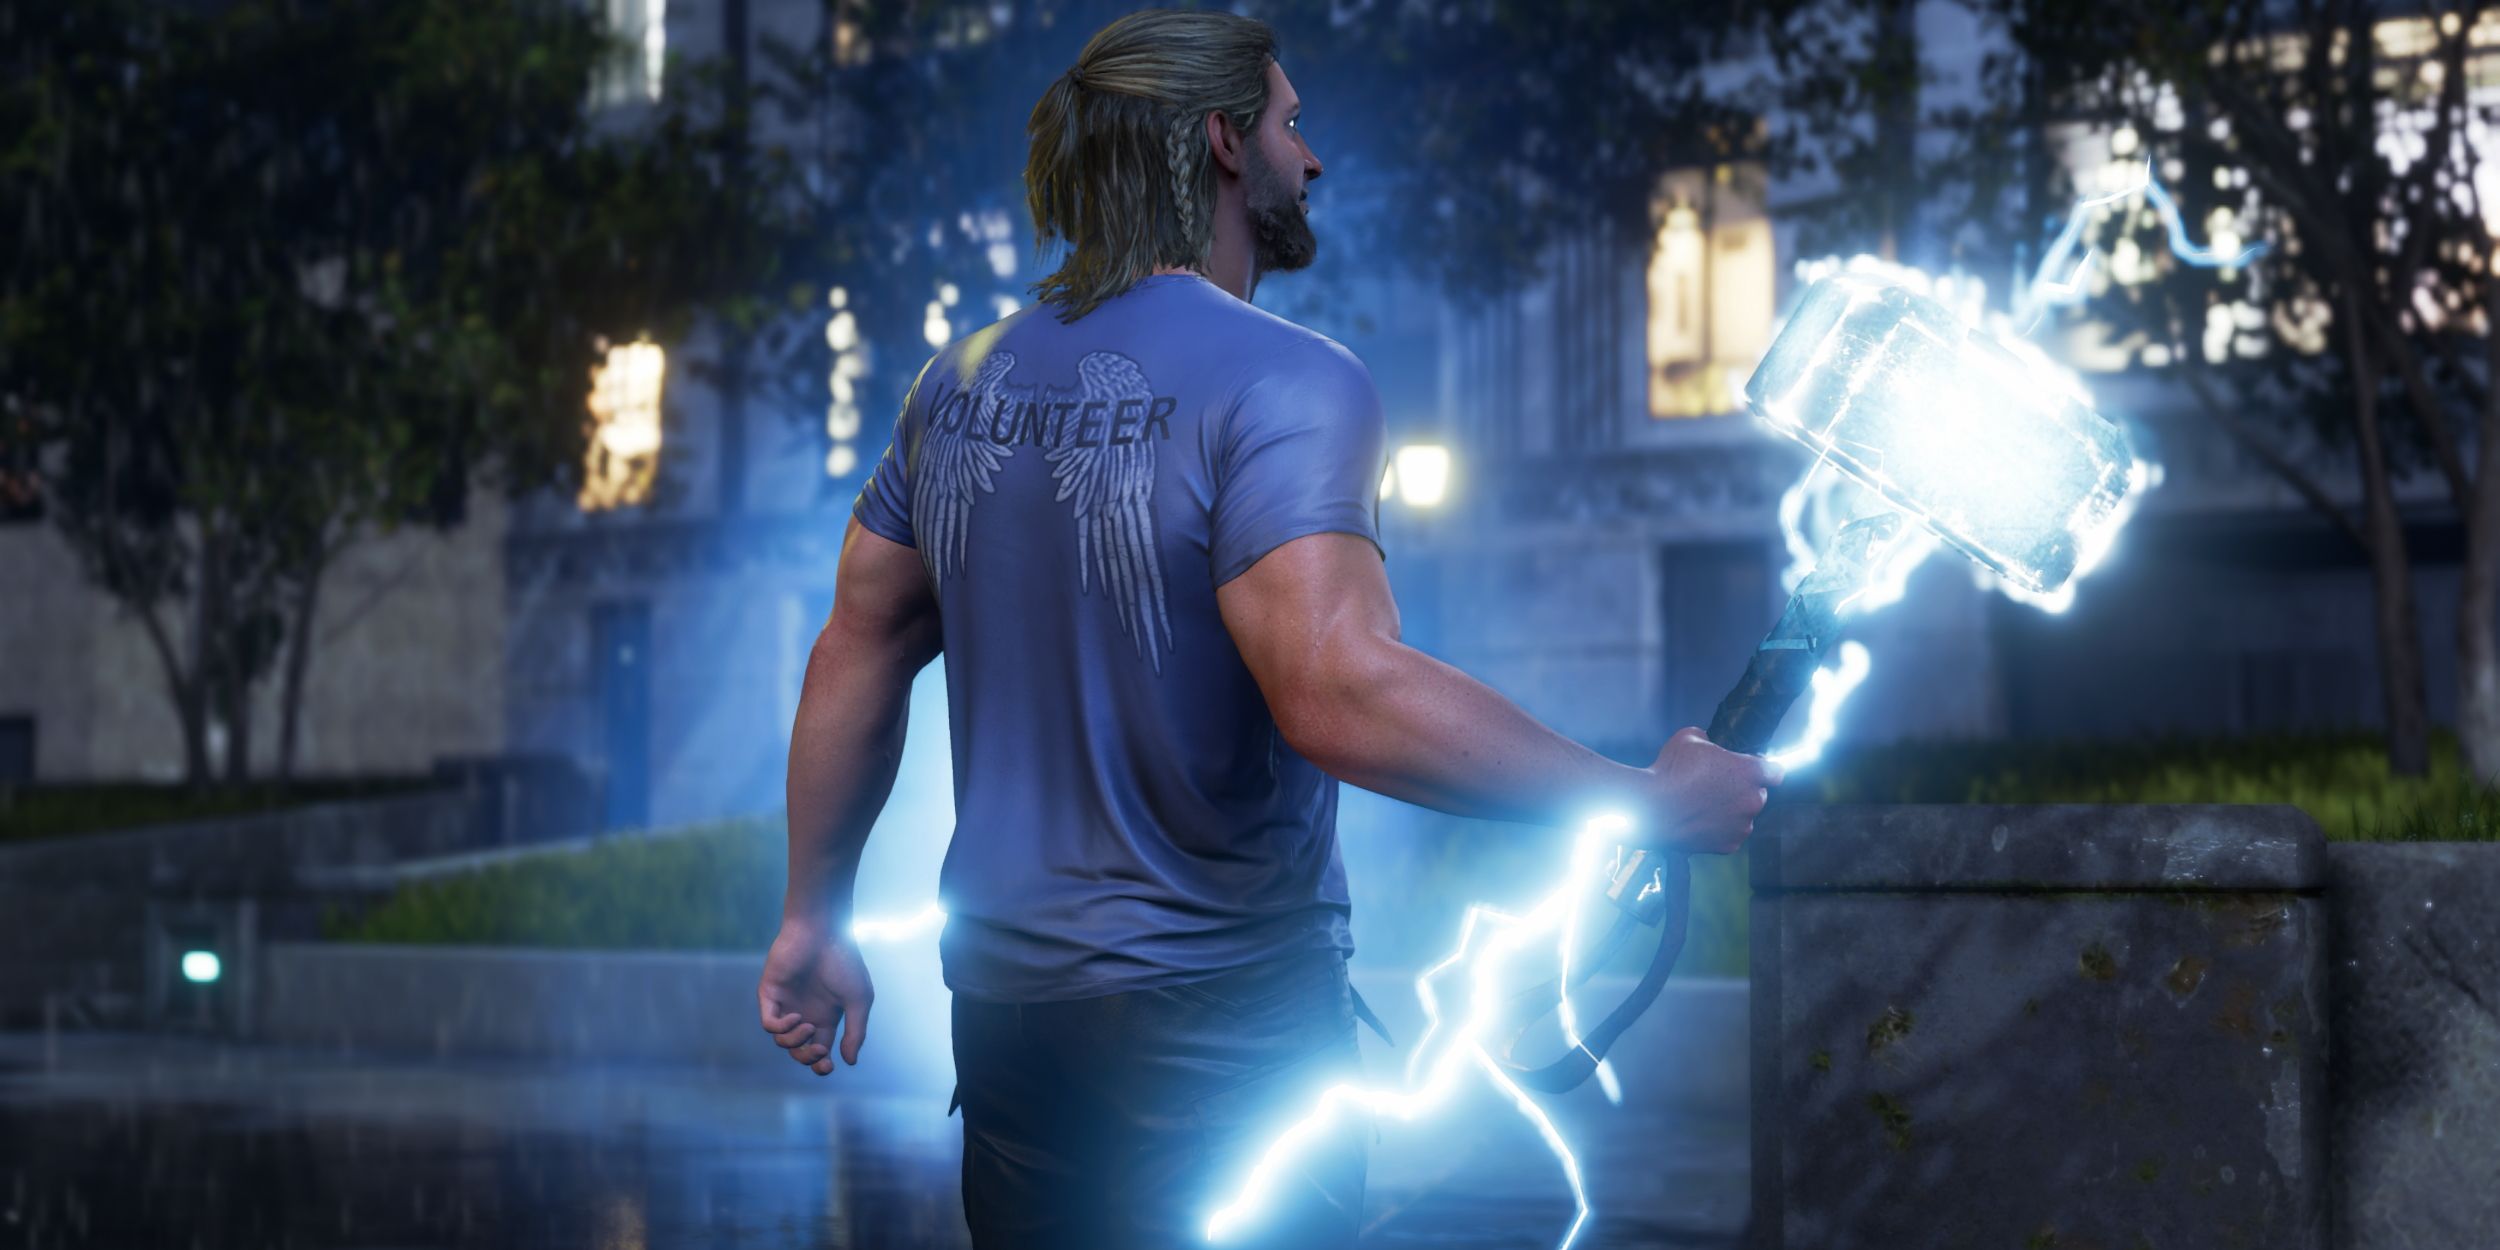 Thor holding hammer that spews lightning